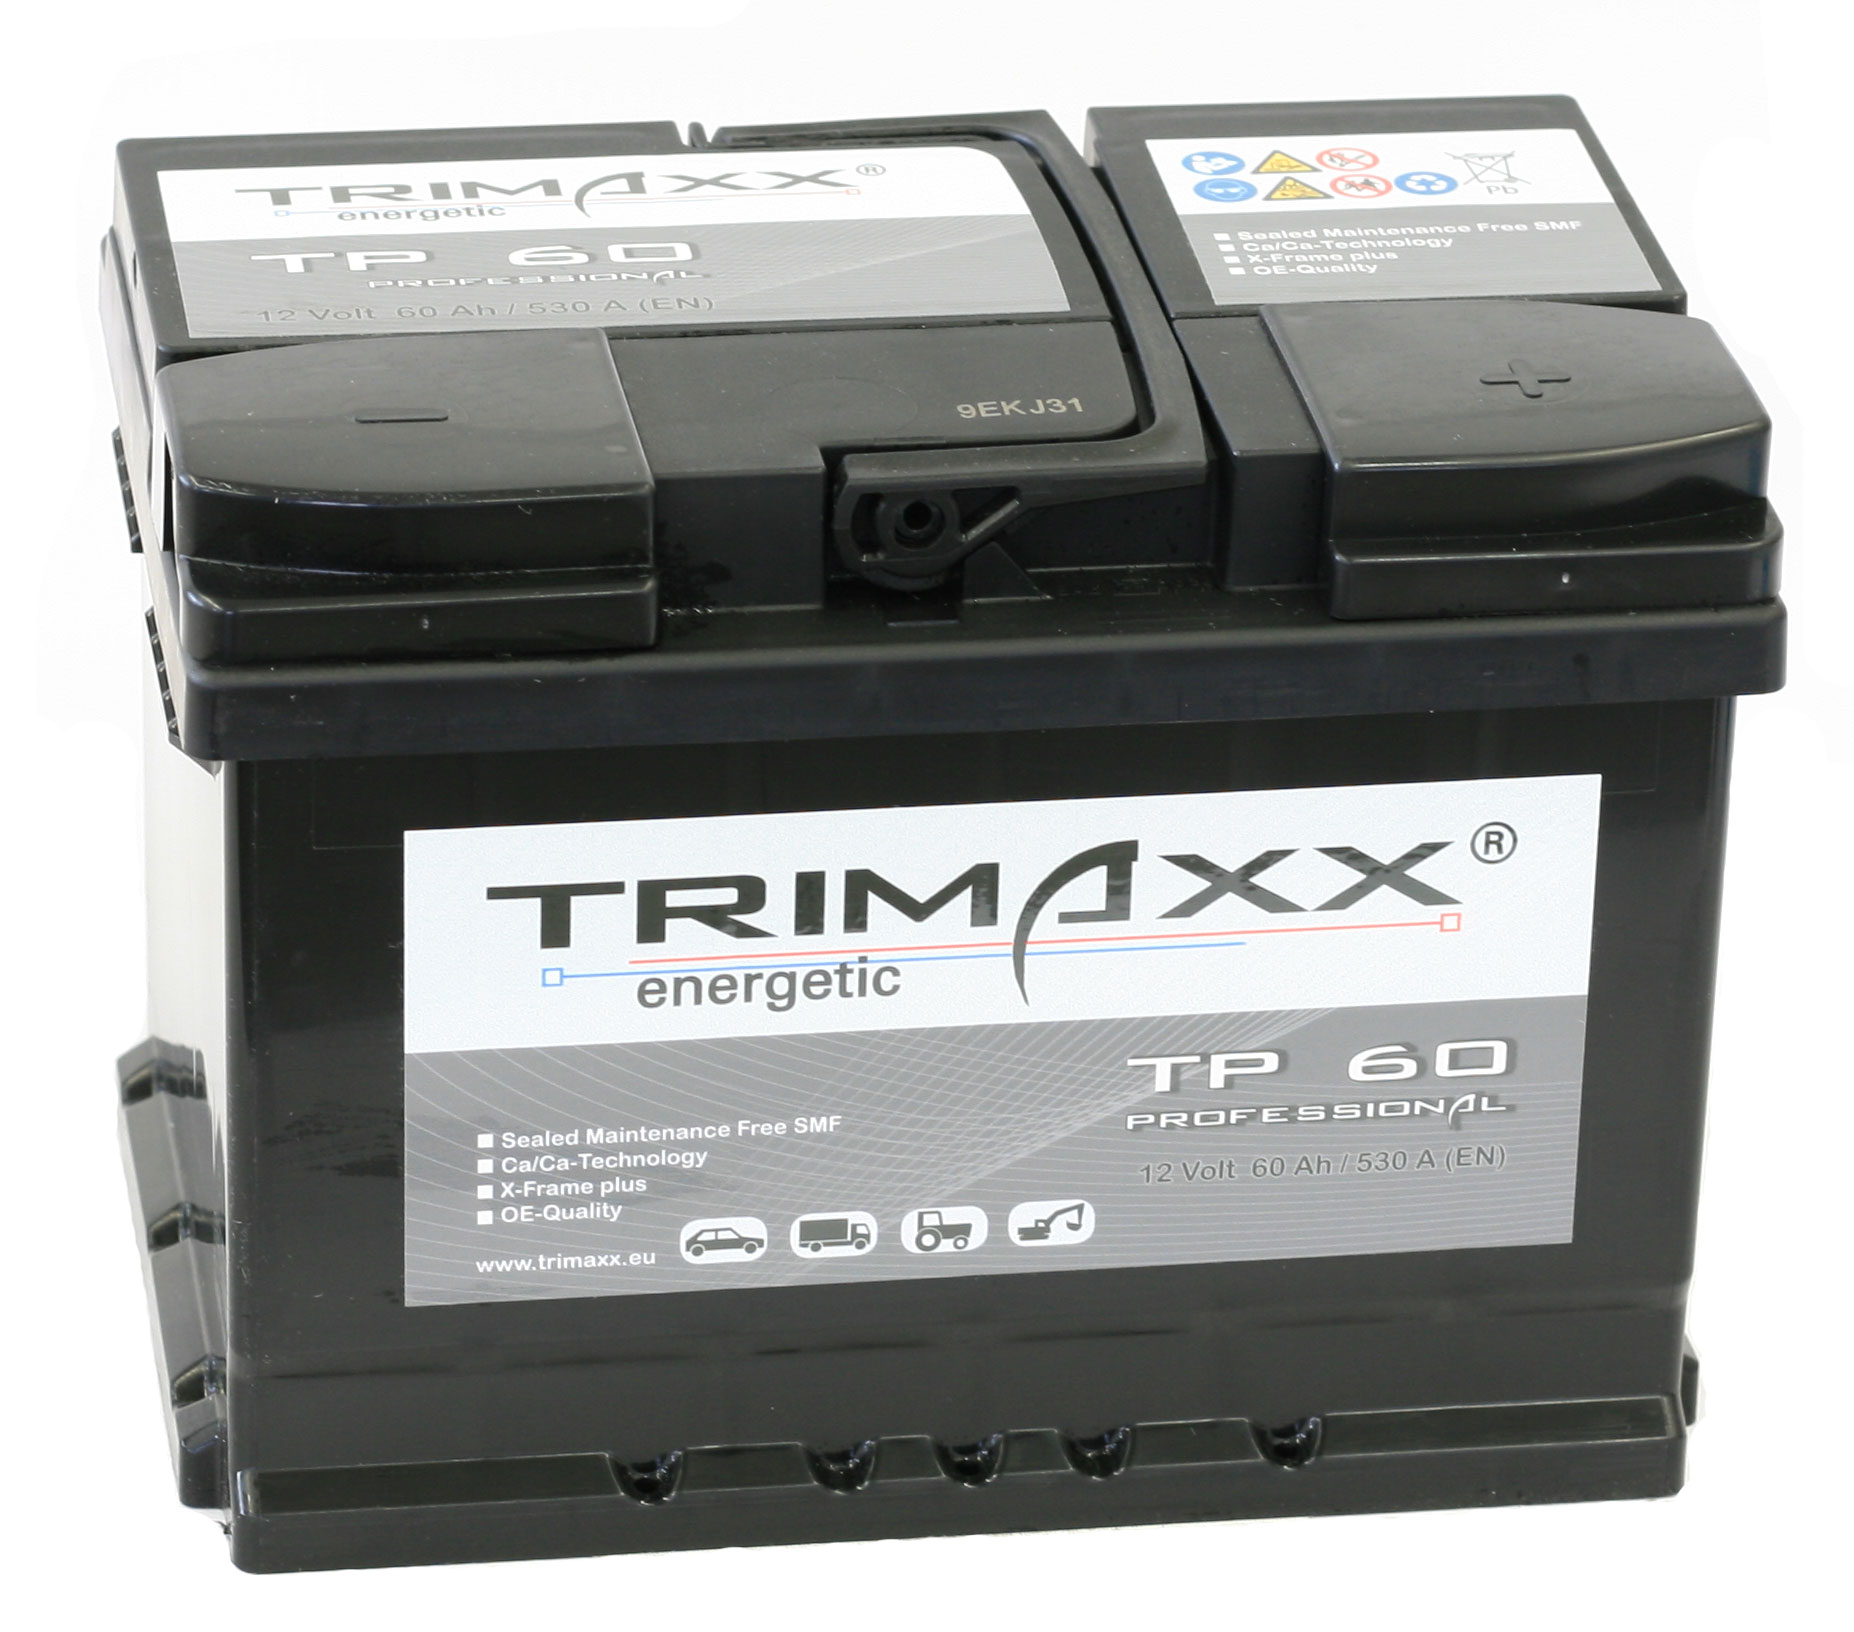 TRIMAXX energetic 12V 60Ah 560A(EN)